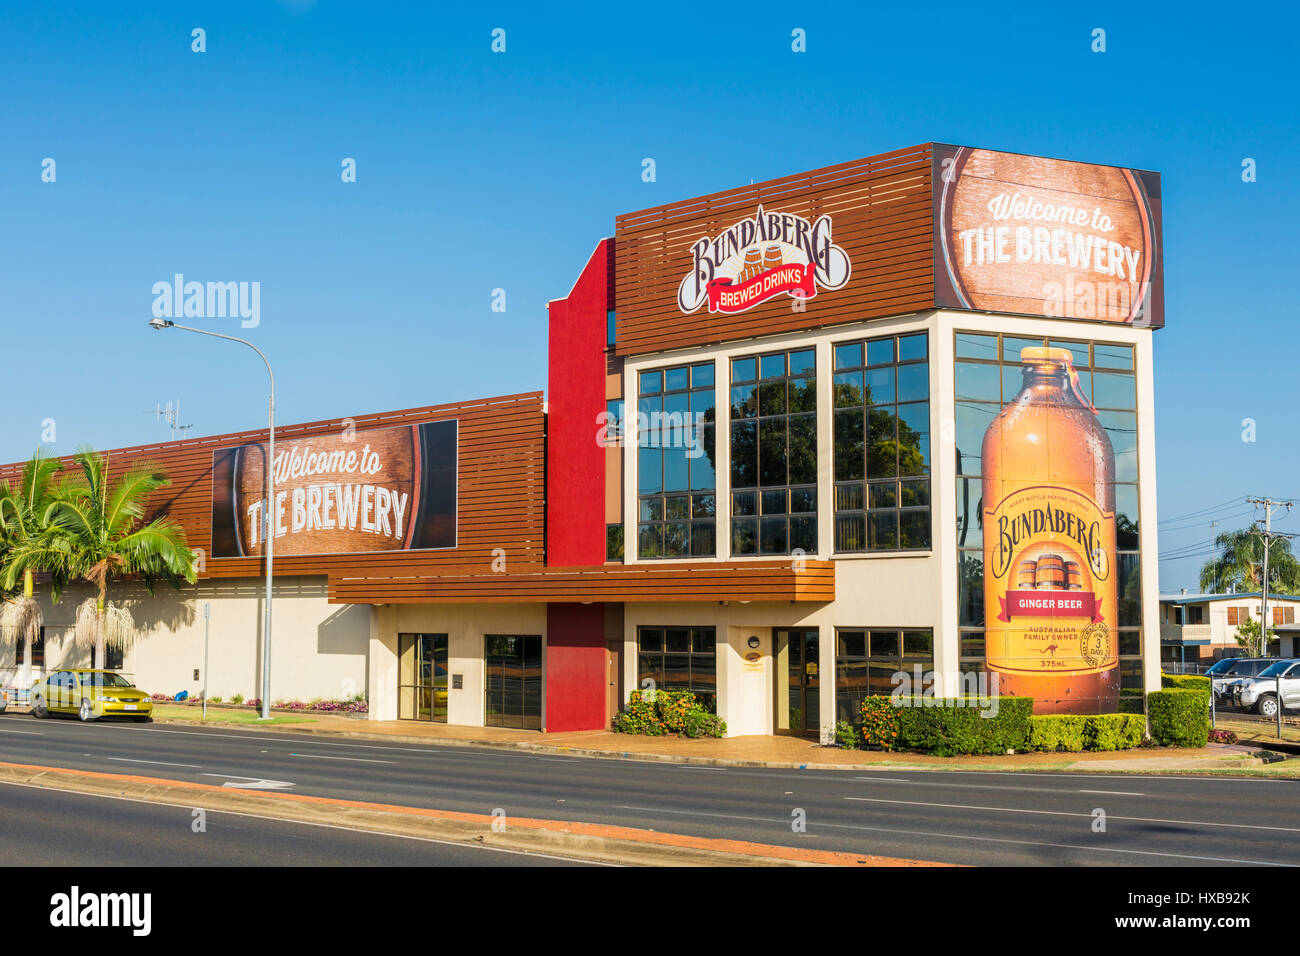 L'usine de boissons brassées de Bundaberg, le foyer de la célèbre bière de gingembre de Bundaberg. Bundaberg, Queensland, Australie Banque D'Images